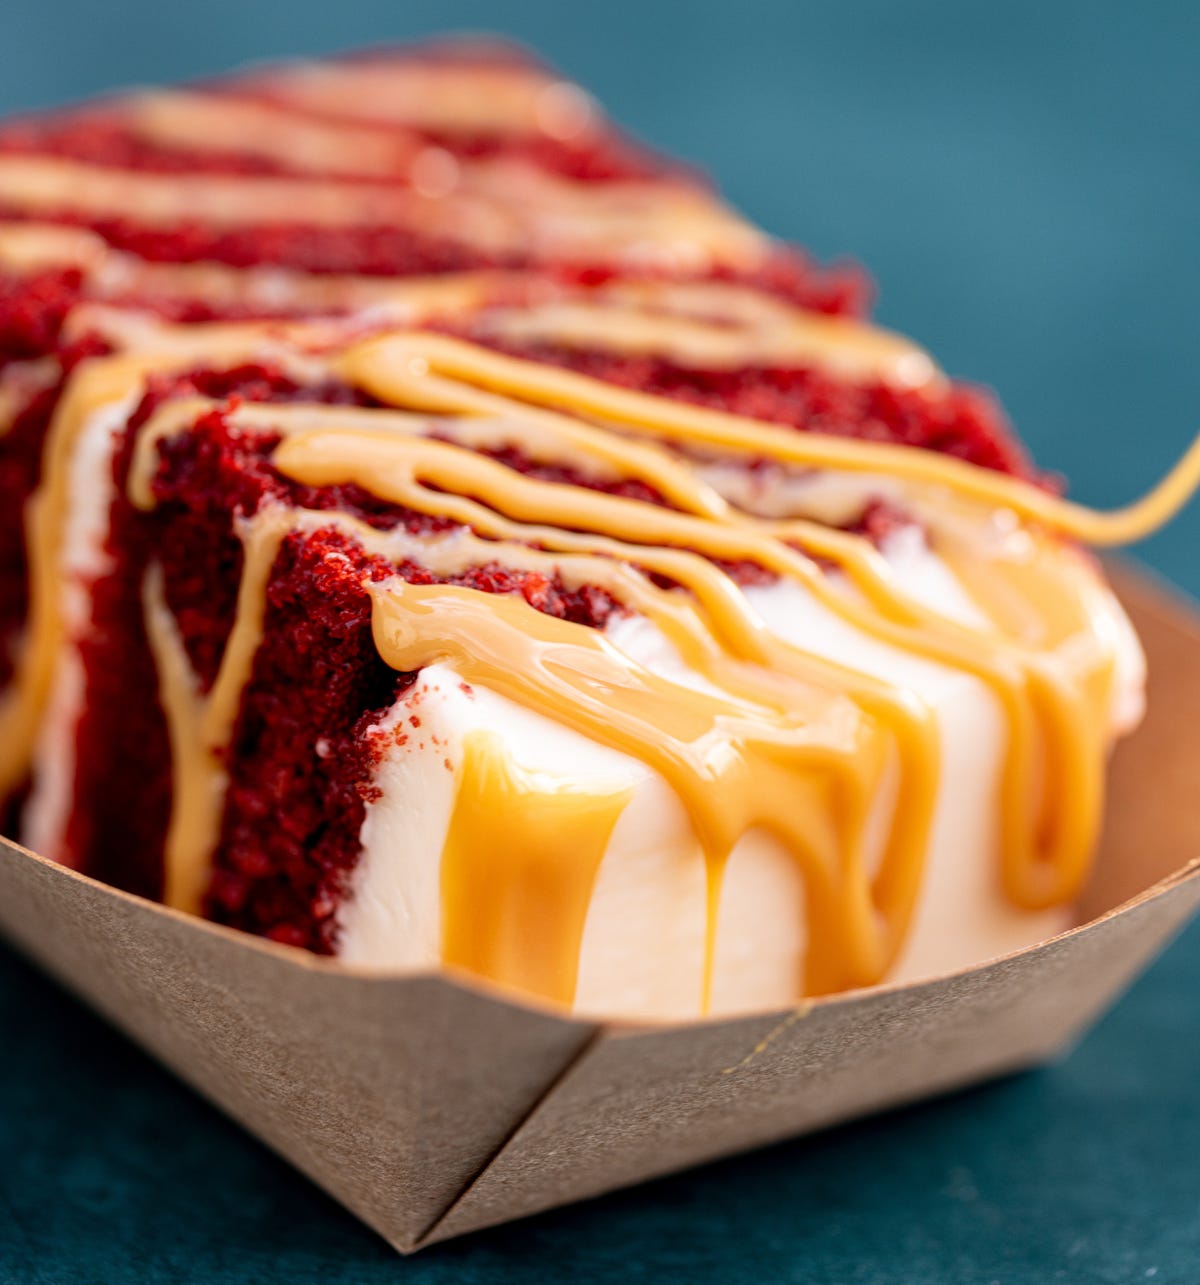 Velvet Taco red velvet cake